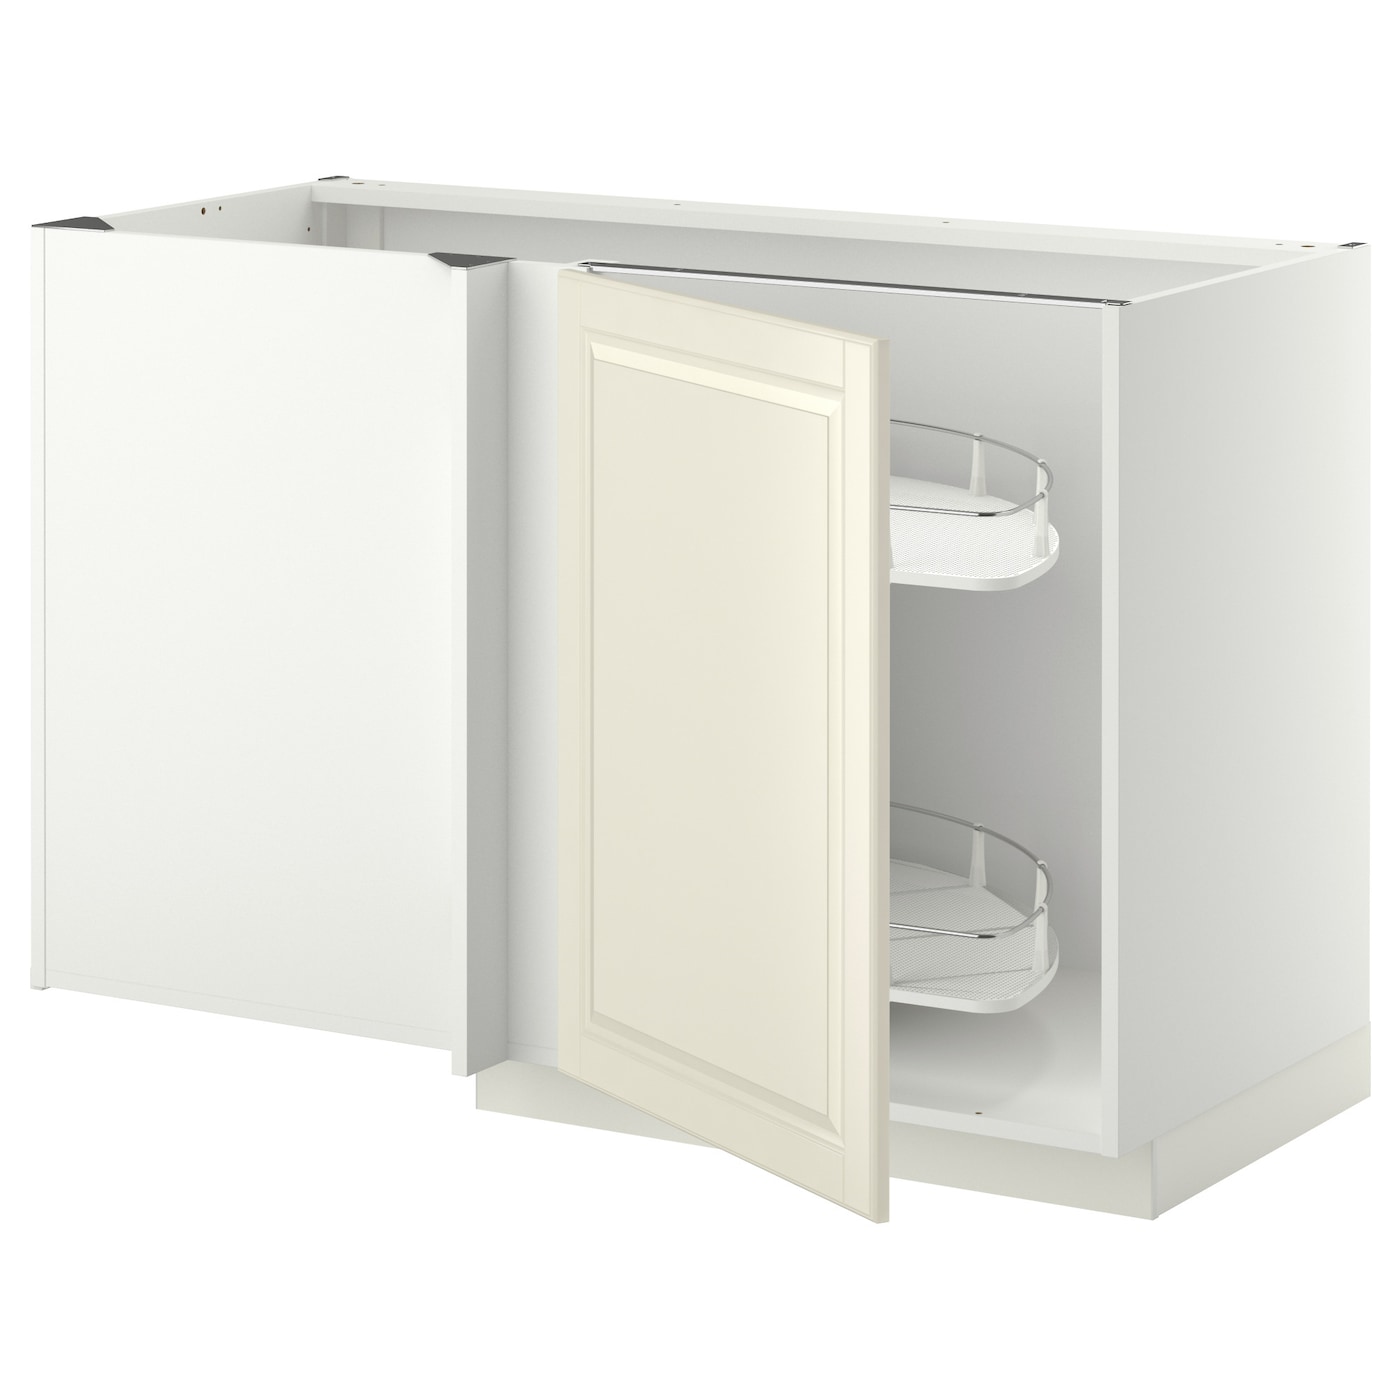 Напольный кухонный шкаф  - IKEA METOD, 88x67,5x127,5см, белый/светло-бежевый, МЕТОД ИКЕА